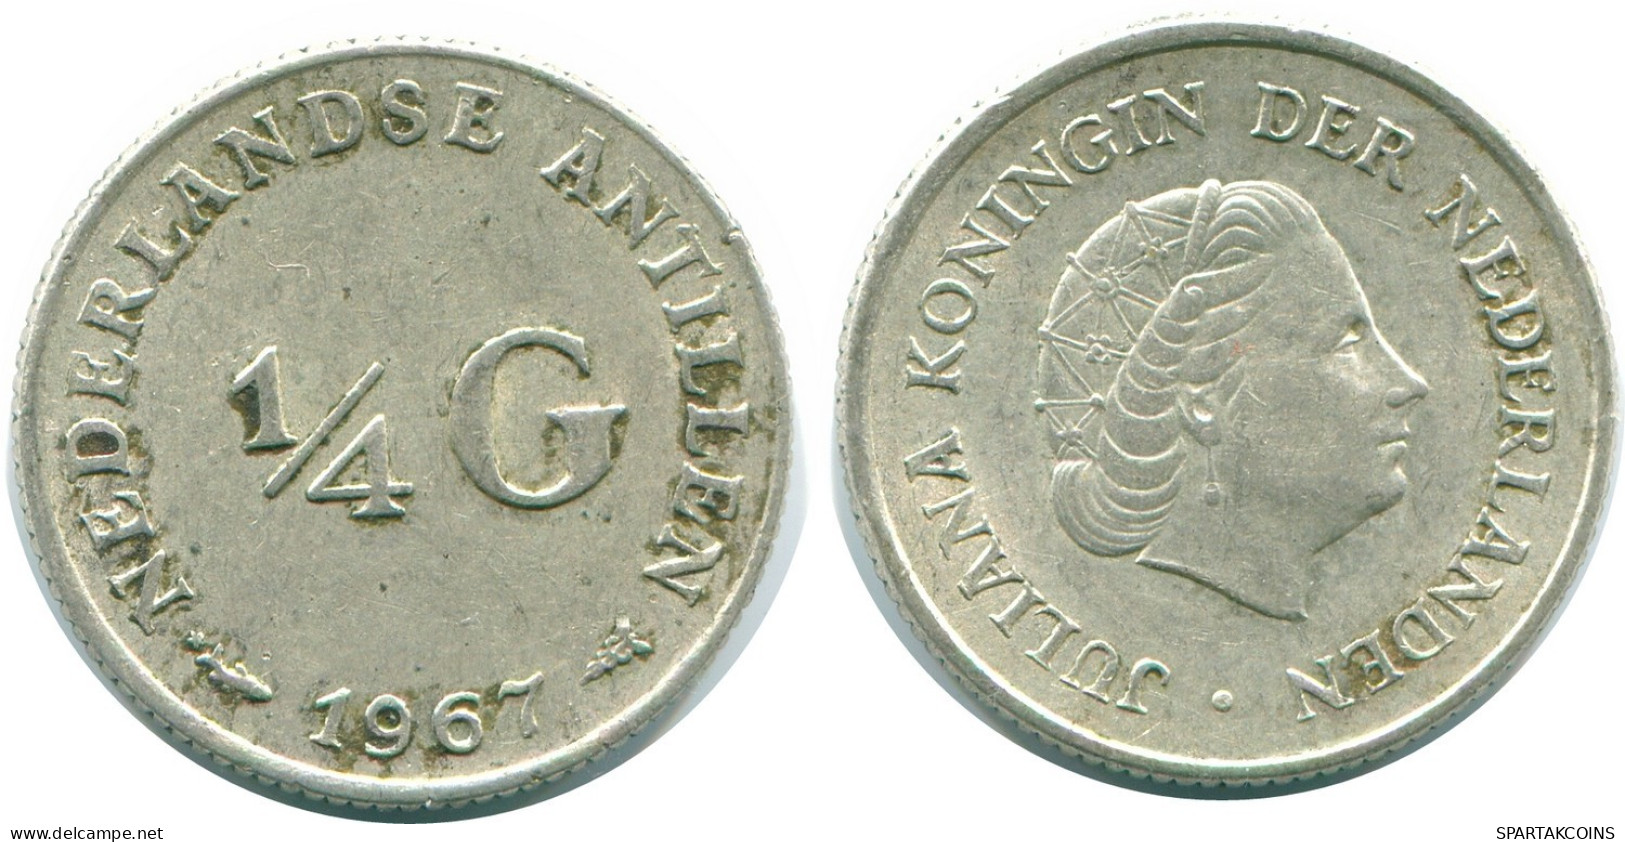 1/4 GULDEN 1967 NIEDERLÄNDISCHE ANTILLEN SILBER Koloniale Münze #NL11476.4.D.A - Nederlandse Antillen